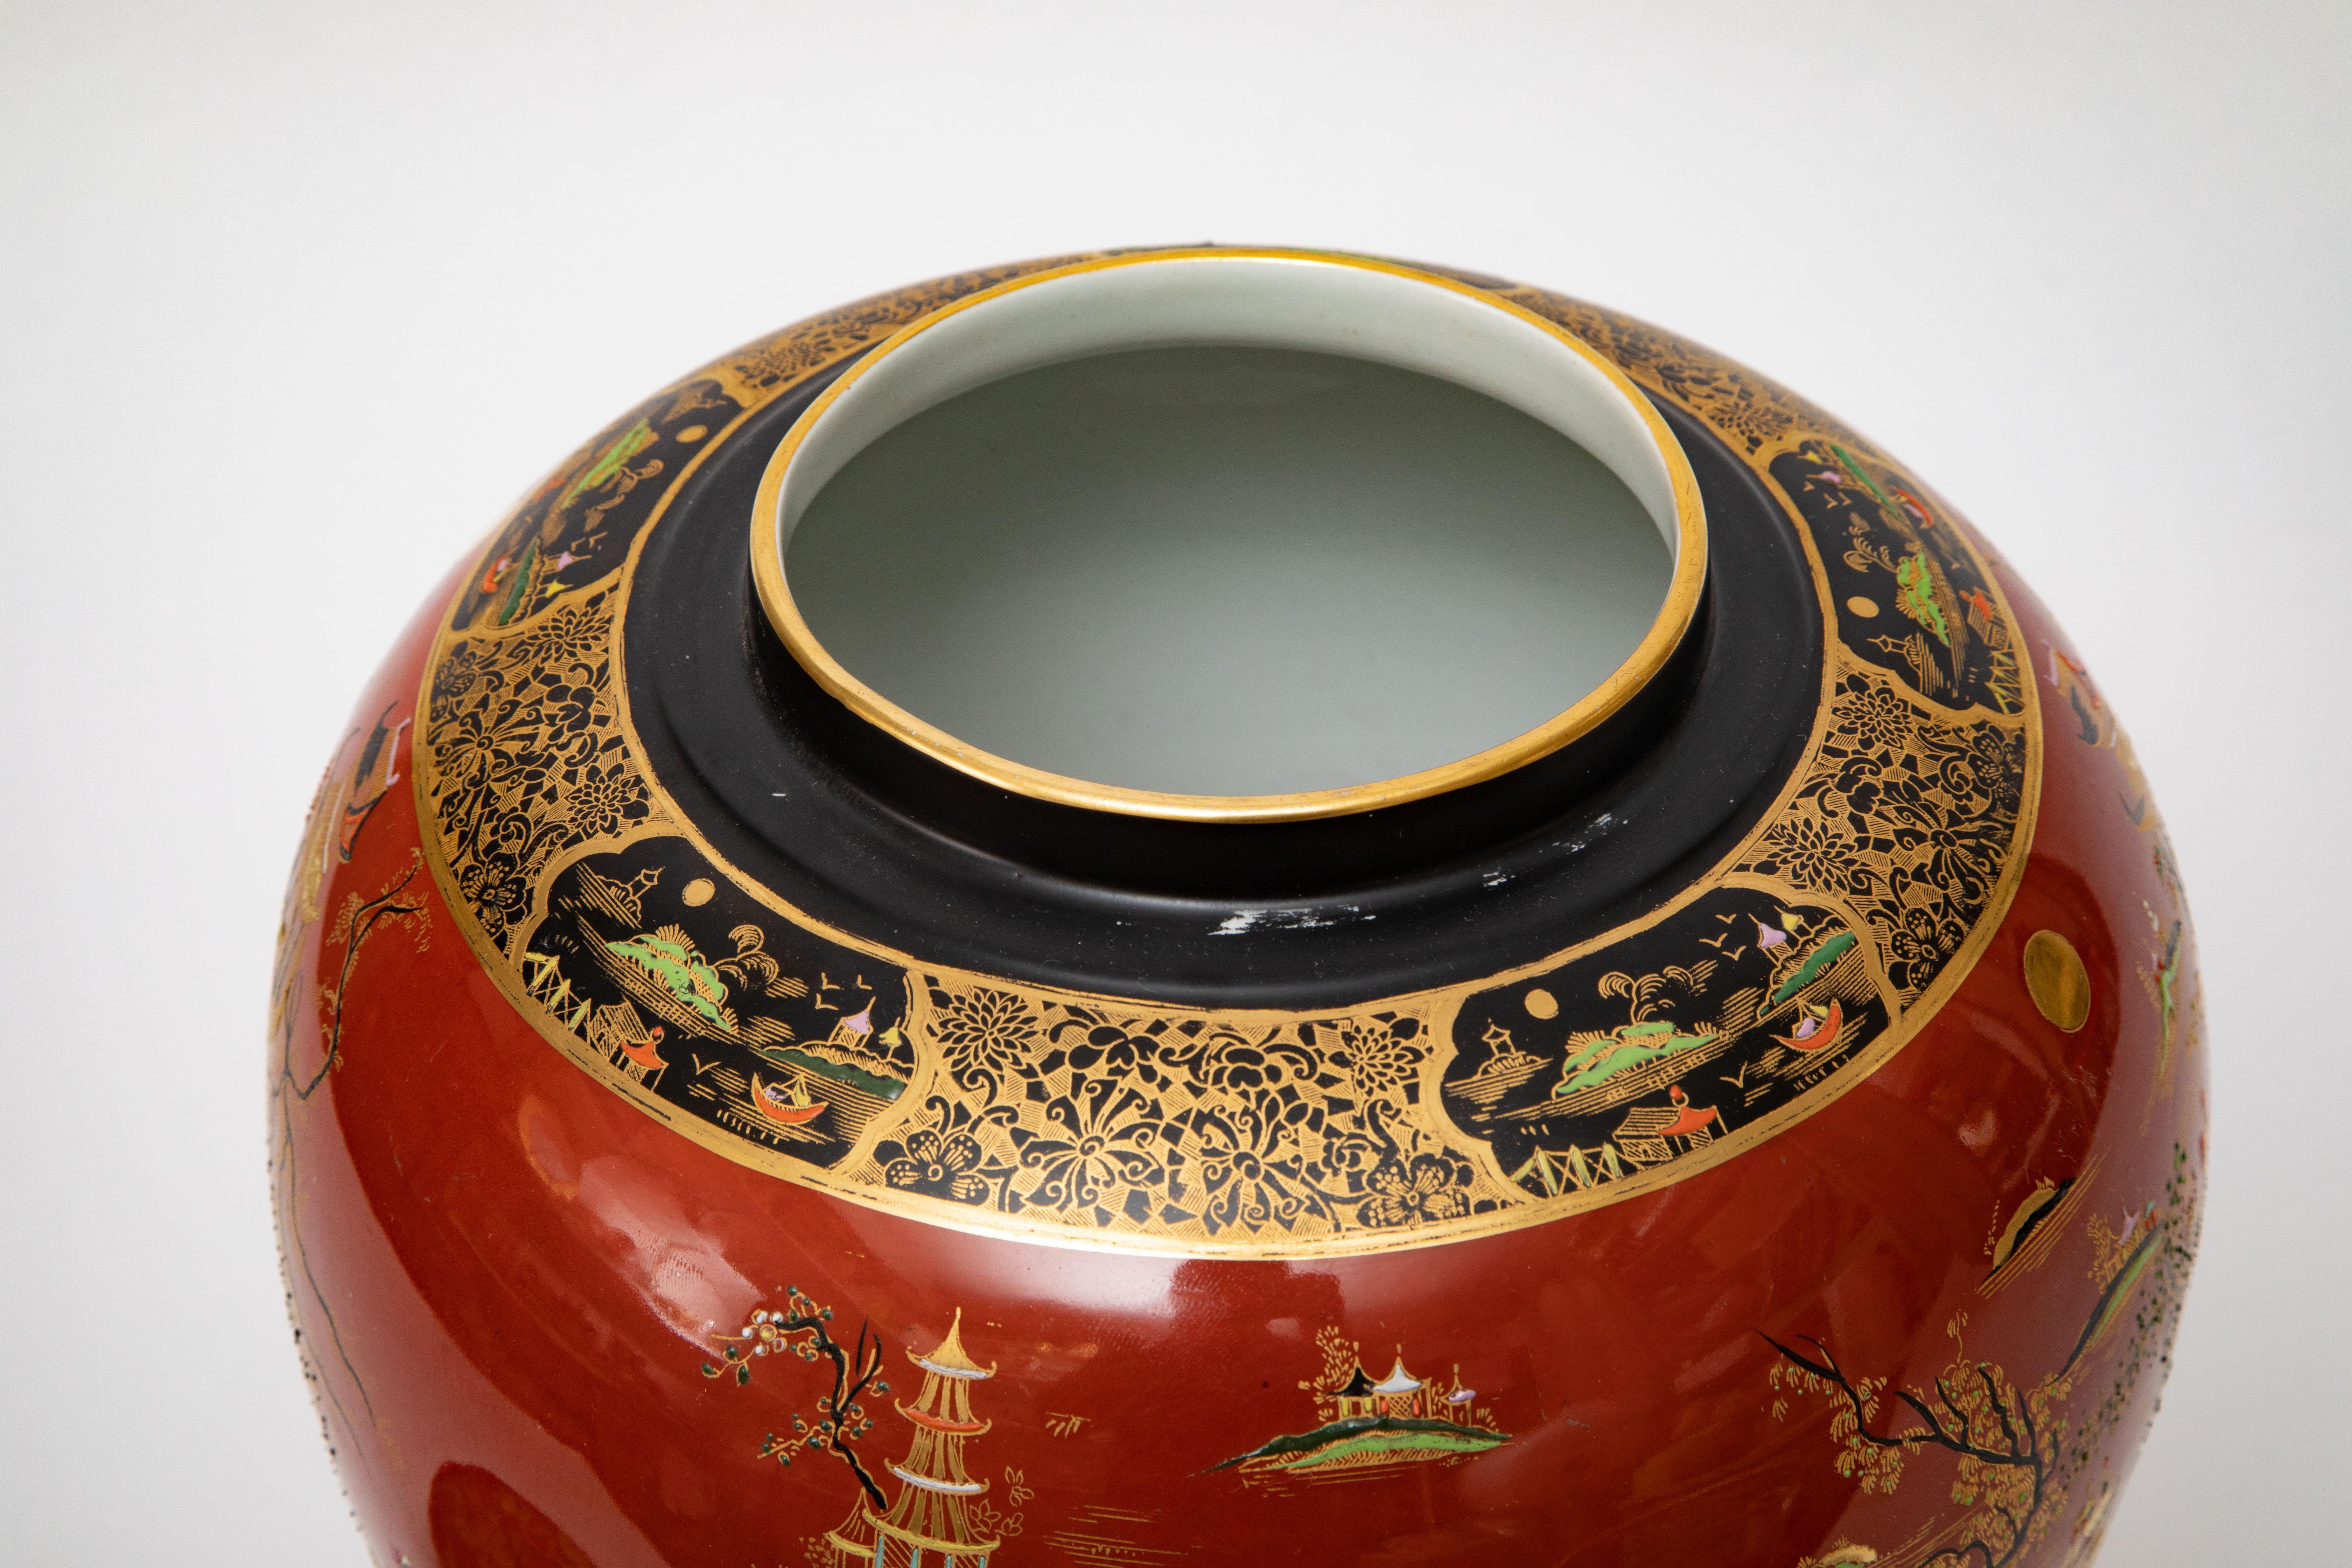 Début du 20ème siècle Très grand vase et couvercle anglais ancien. Design chinoiseries orange brûlé et noir en vente